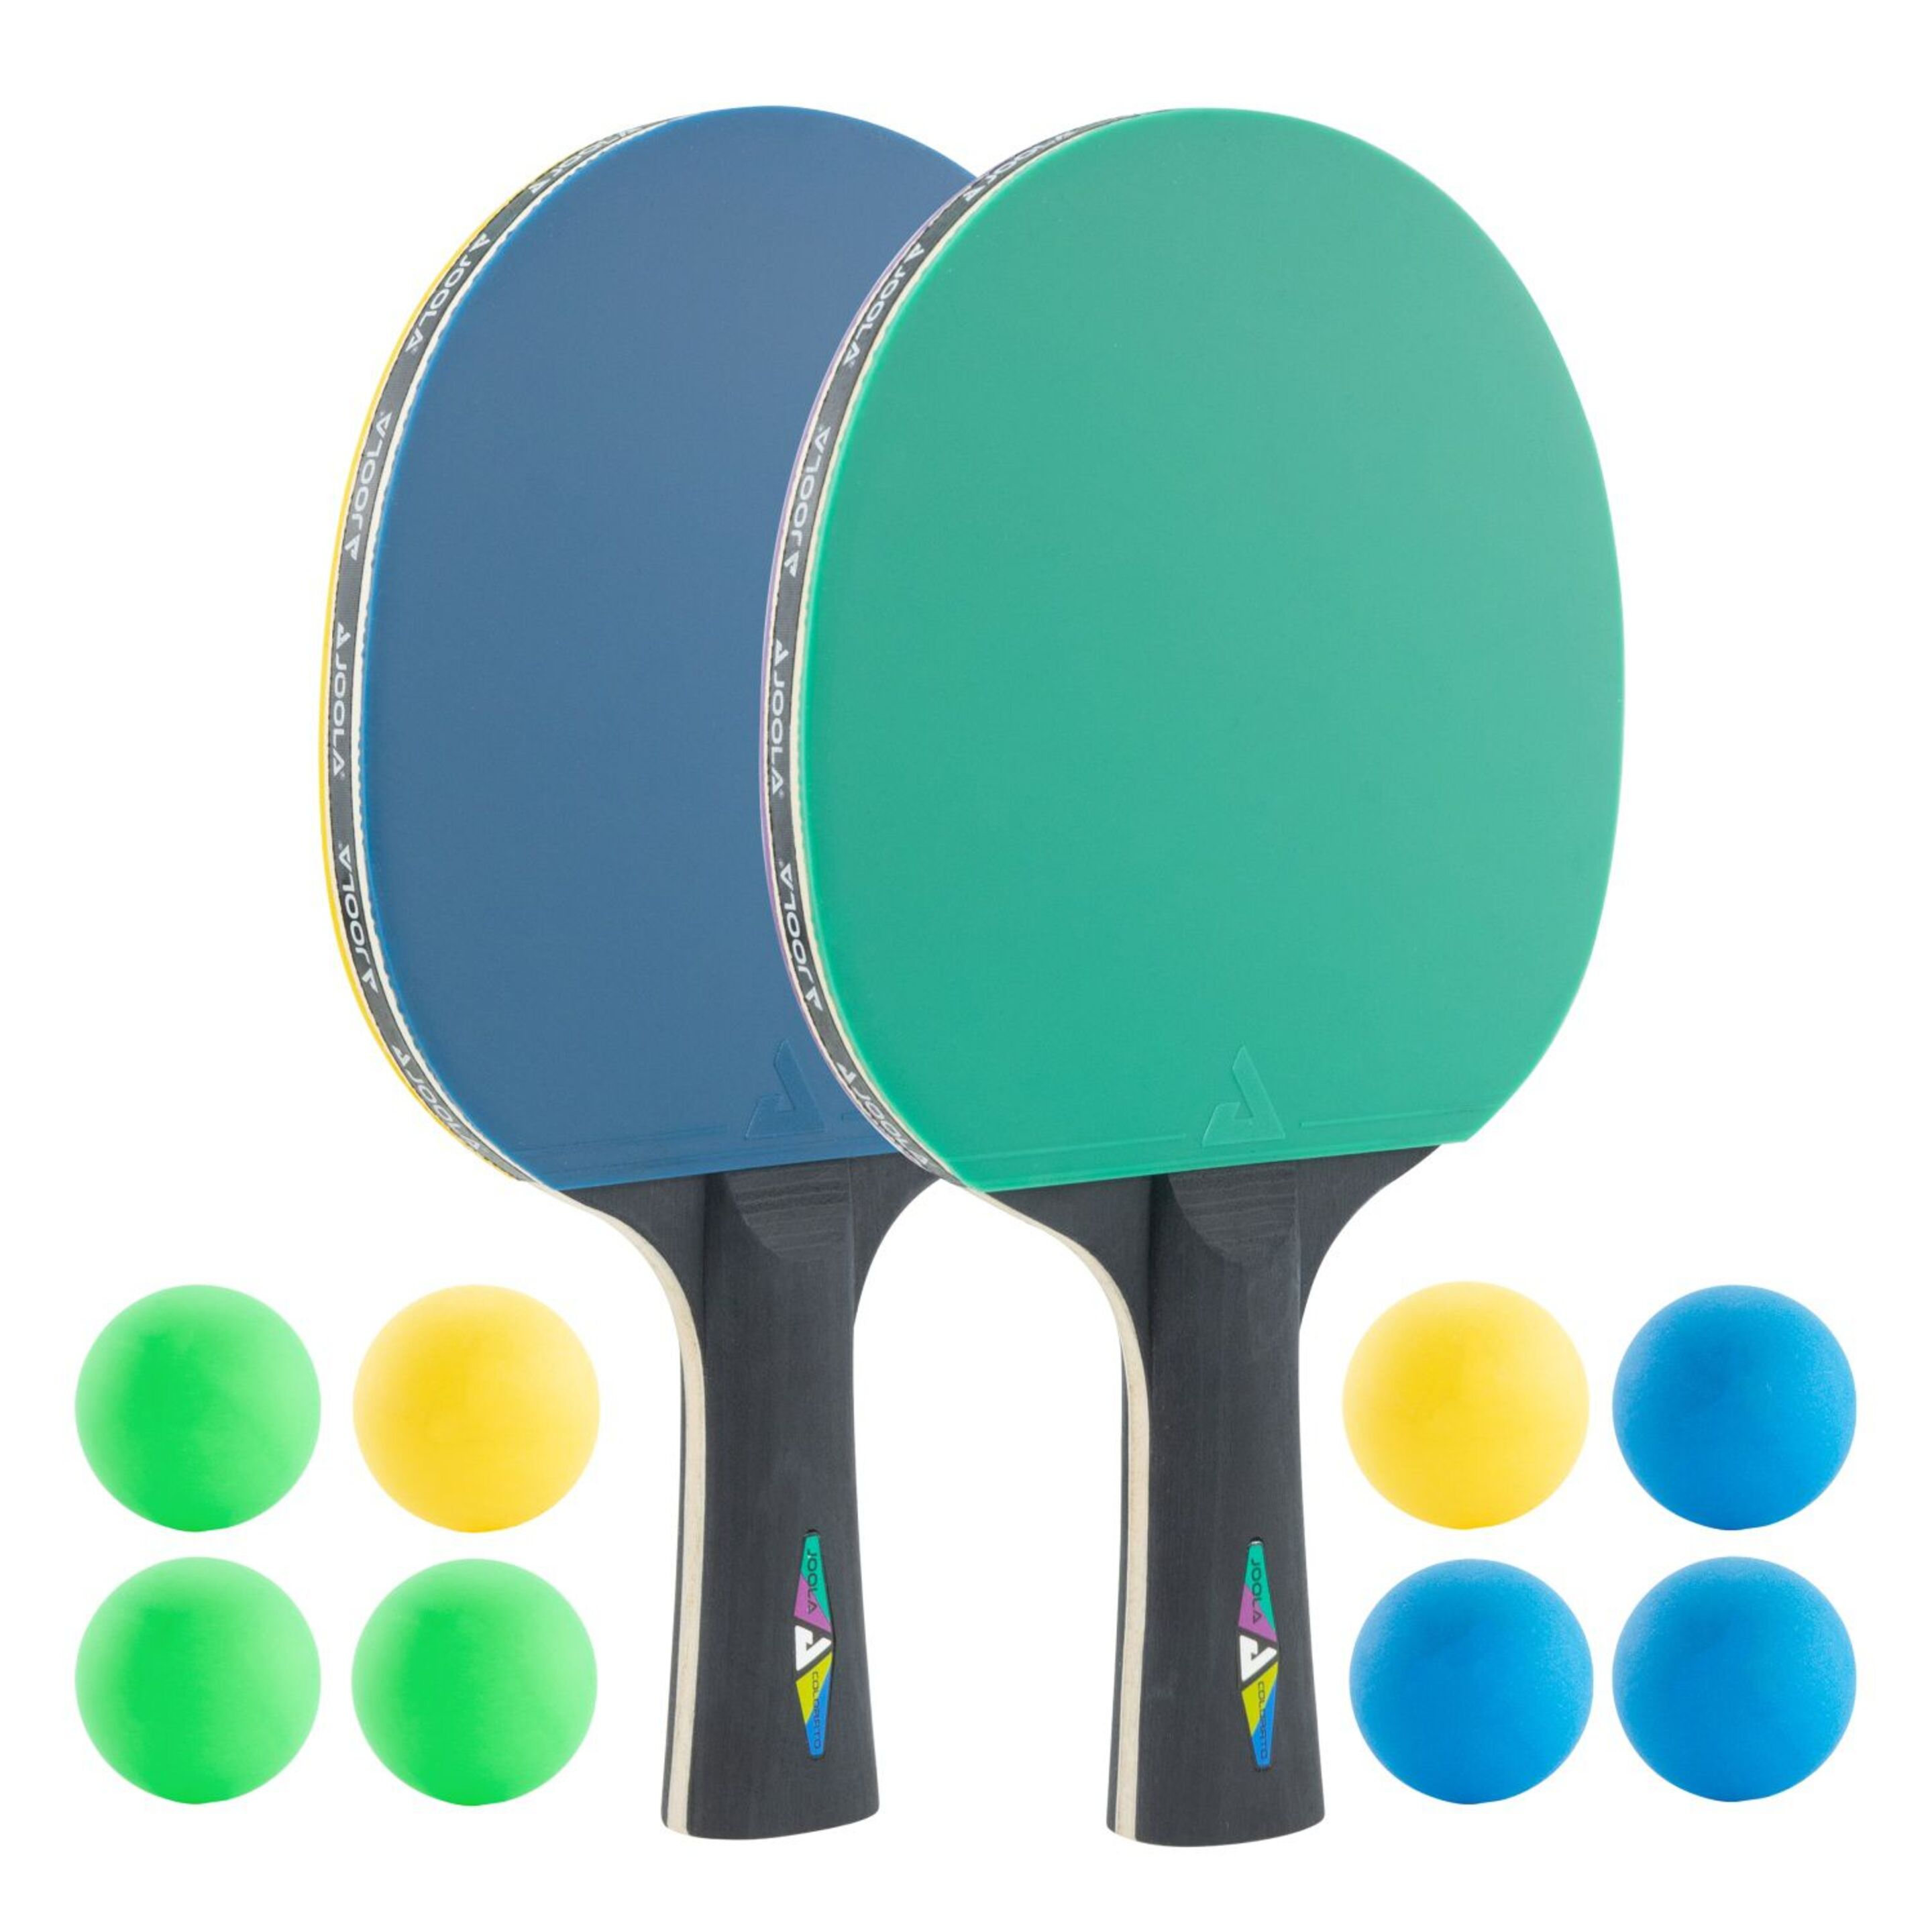 Set Tenis De Mesa Joola Colorato 2schl/8b - Multicolor  MKP